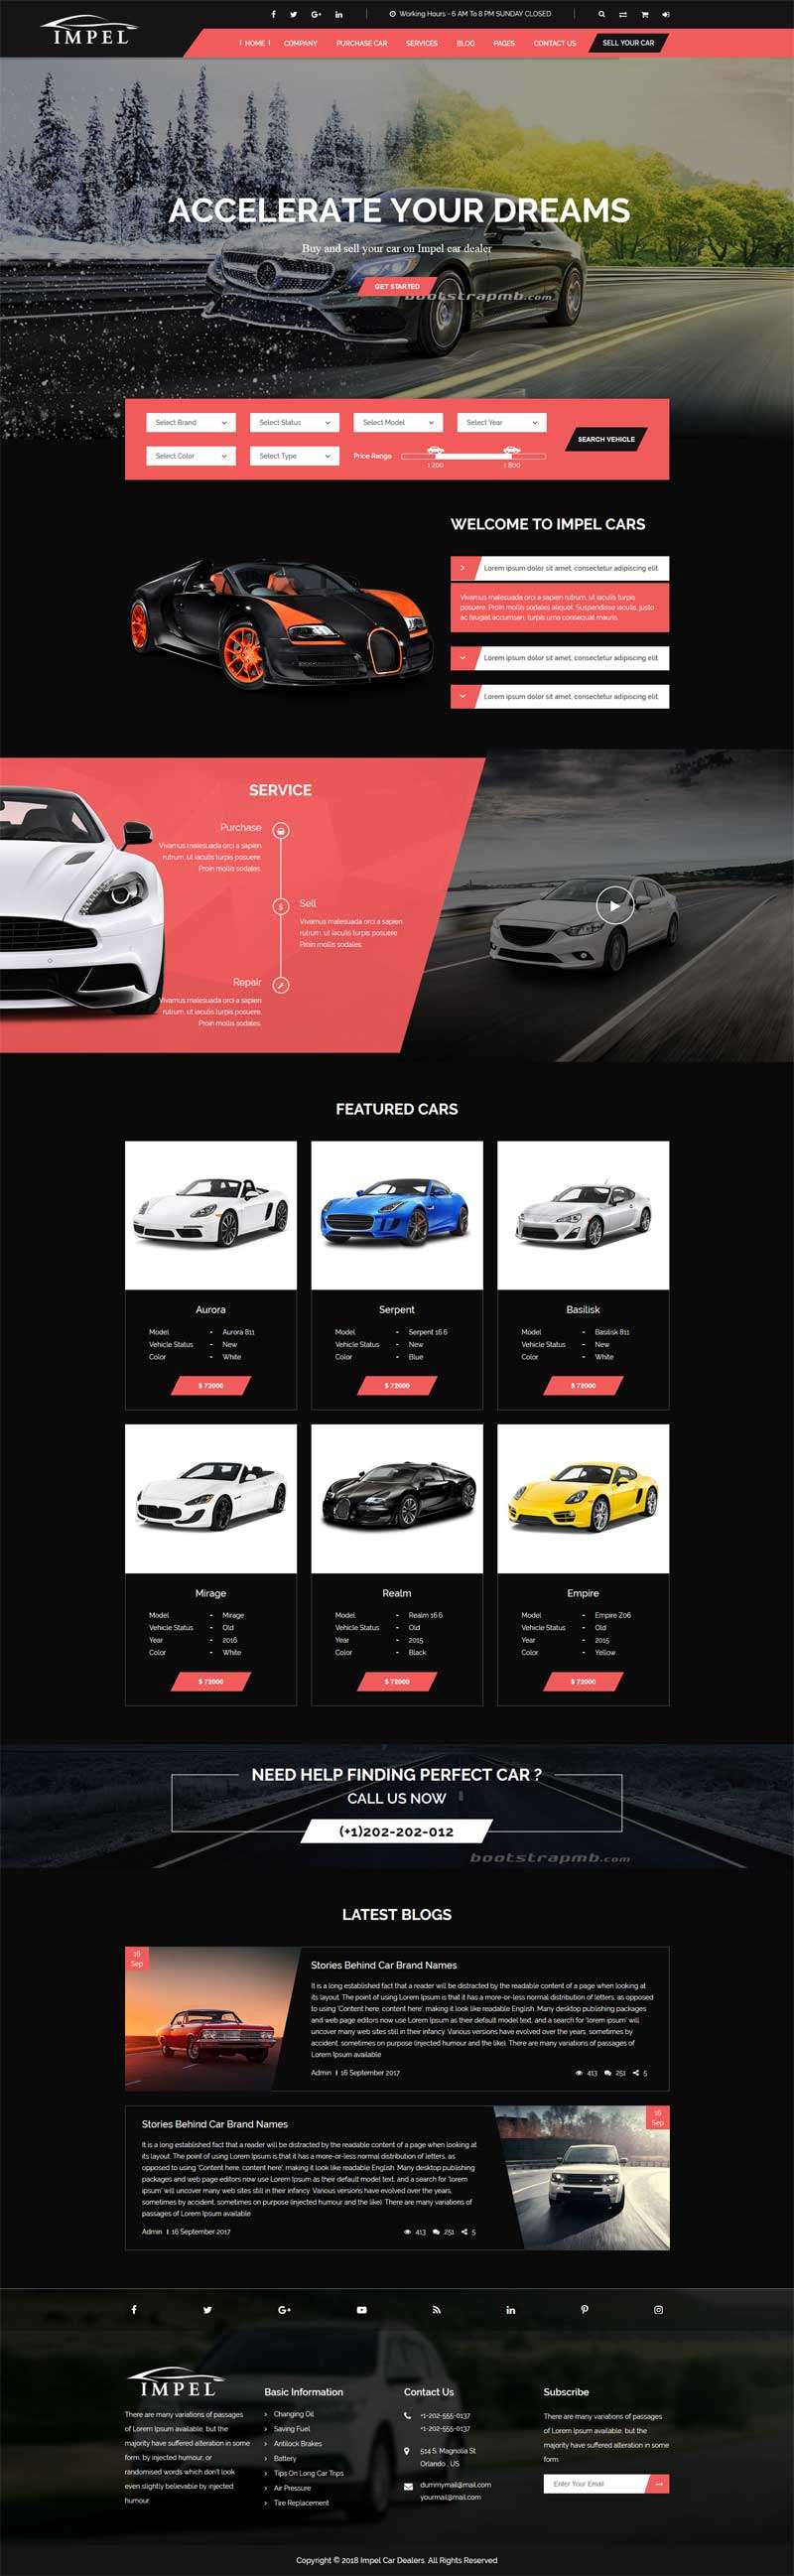 汽车经销商4S店企业html网站模板